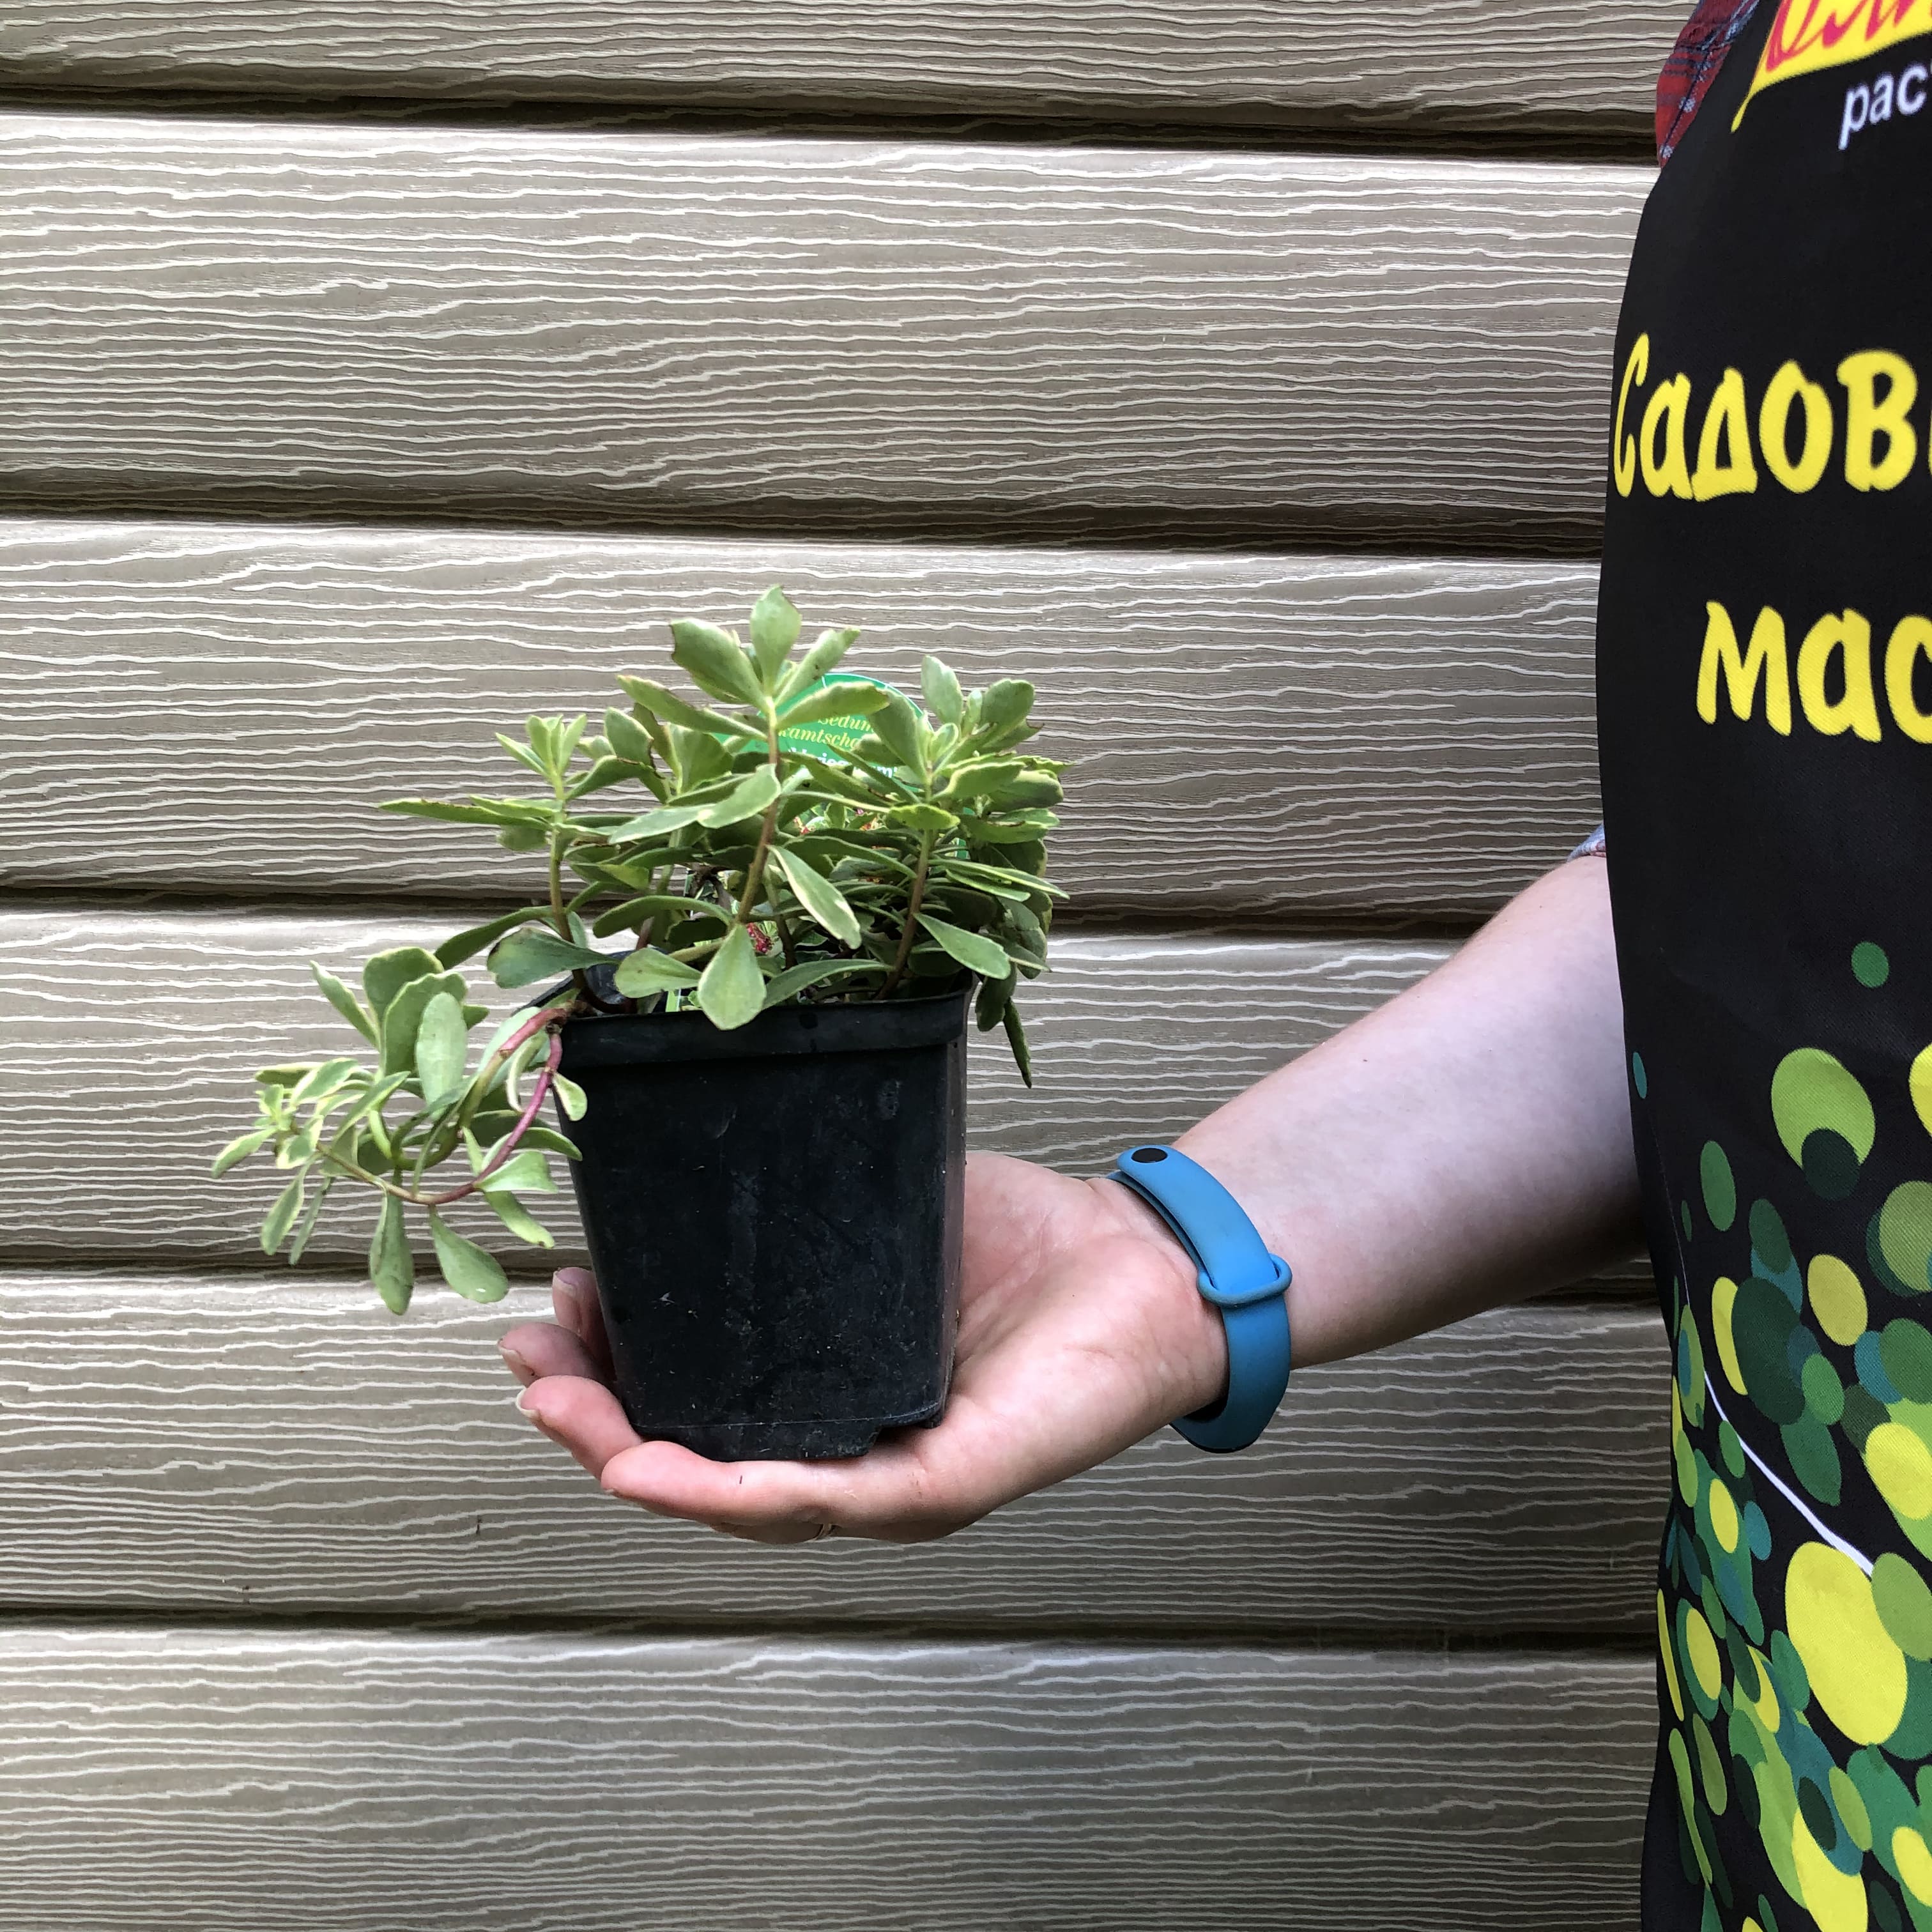 Седум камчатский Вариегатум – многолетнее растение высотой 15-30 см с приподнимающимися густооблиственными стеблями. Листья длиной до 7 см, продолговато-ланцетные или лопатчатые, пильчатые, зеленые с кремовыми пятнами и каймой. Цветки оранжево-желтые, соб